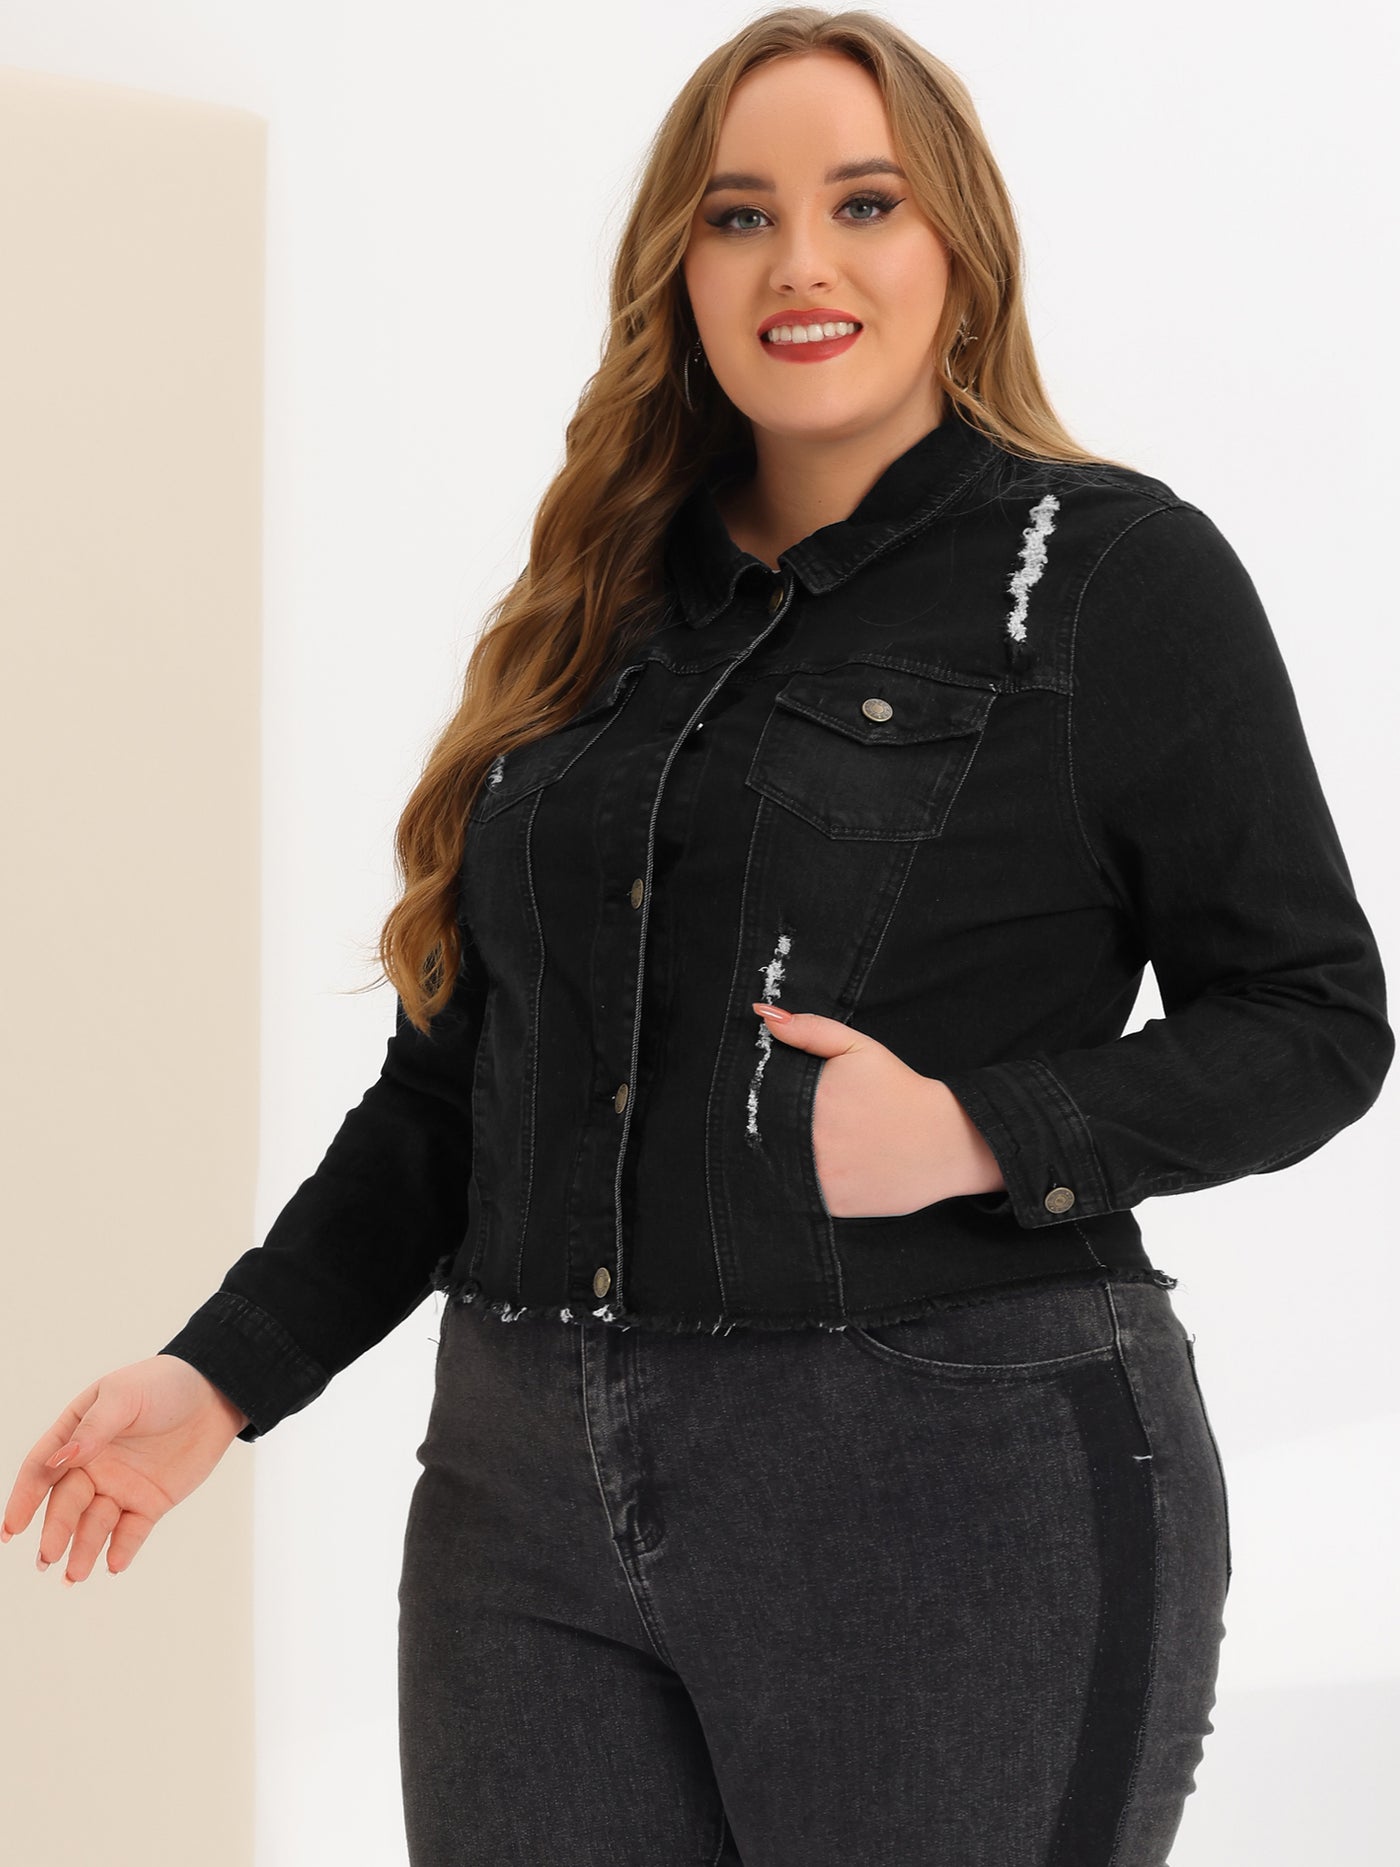 Bublédon Women's Classic Plus Size Denim Jacket